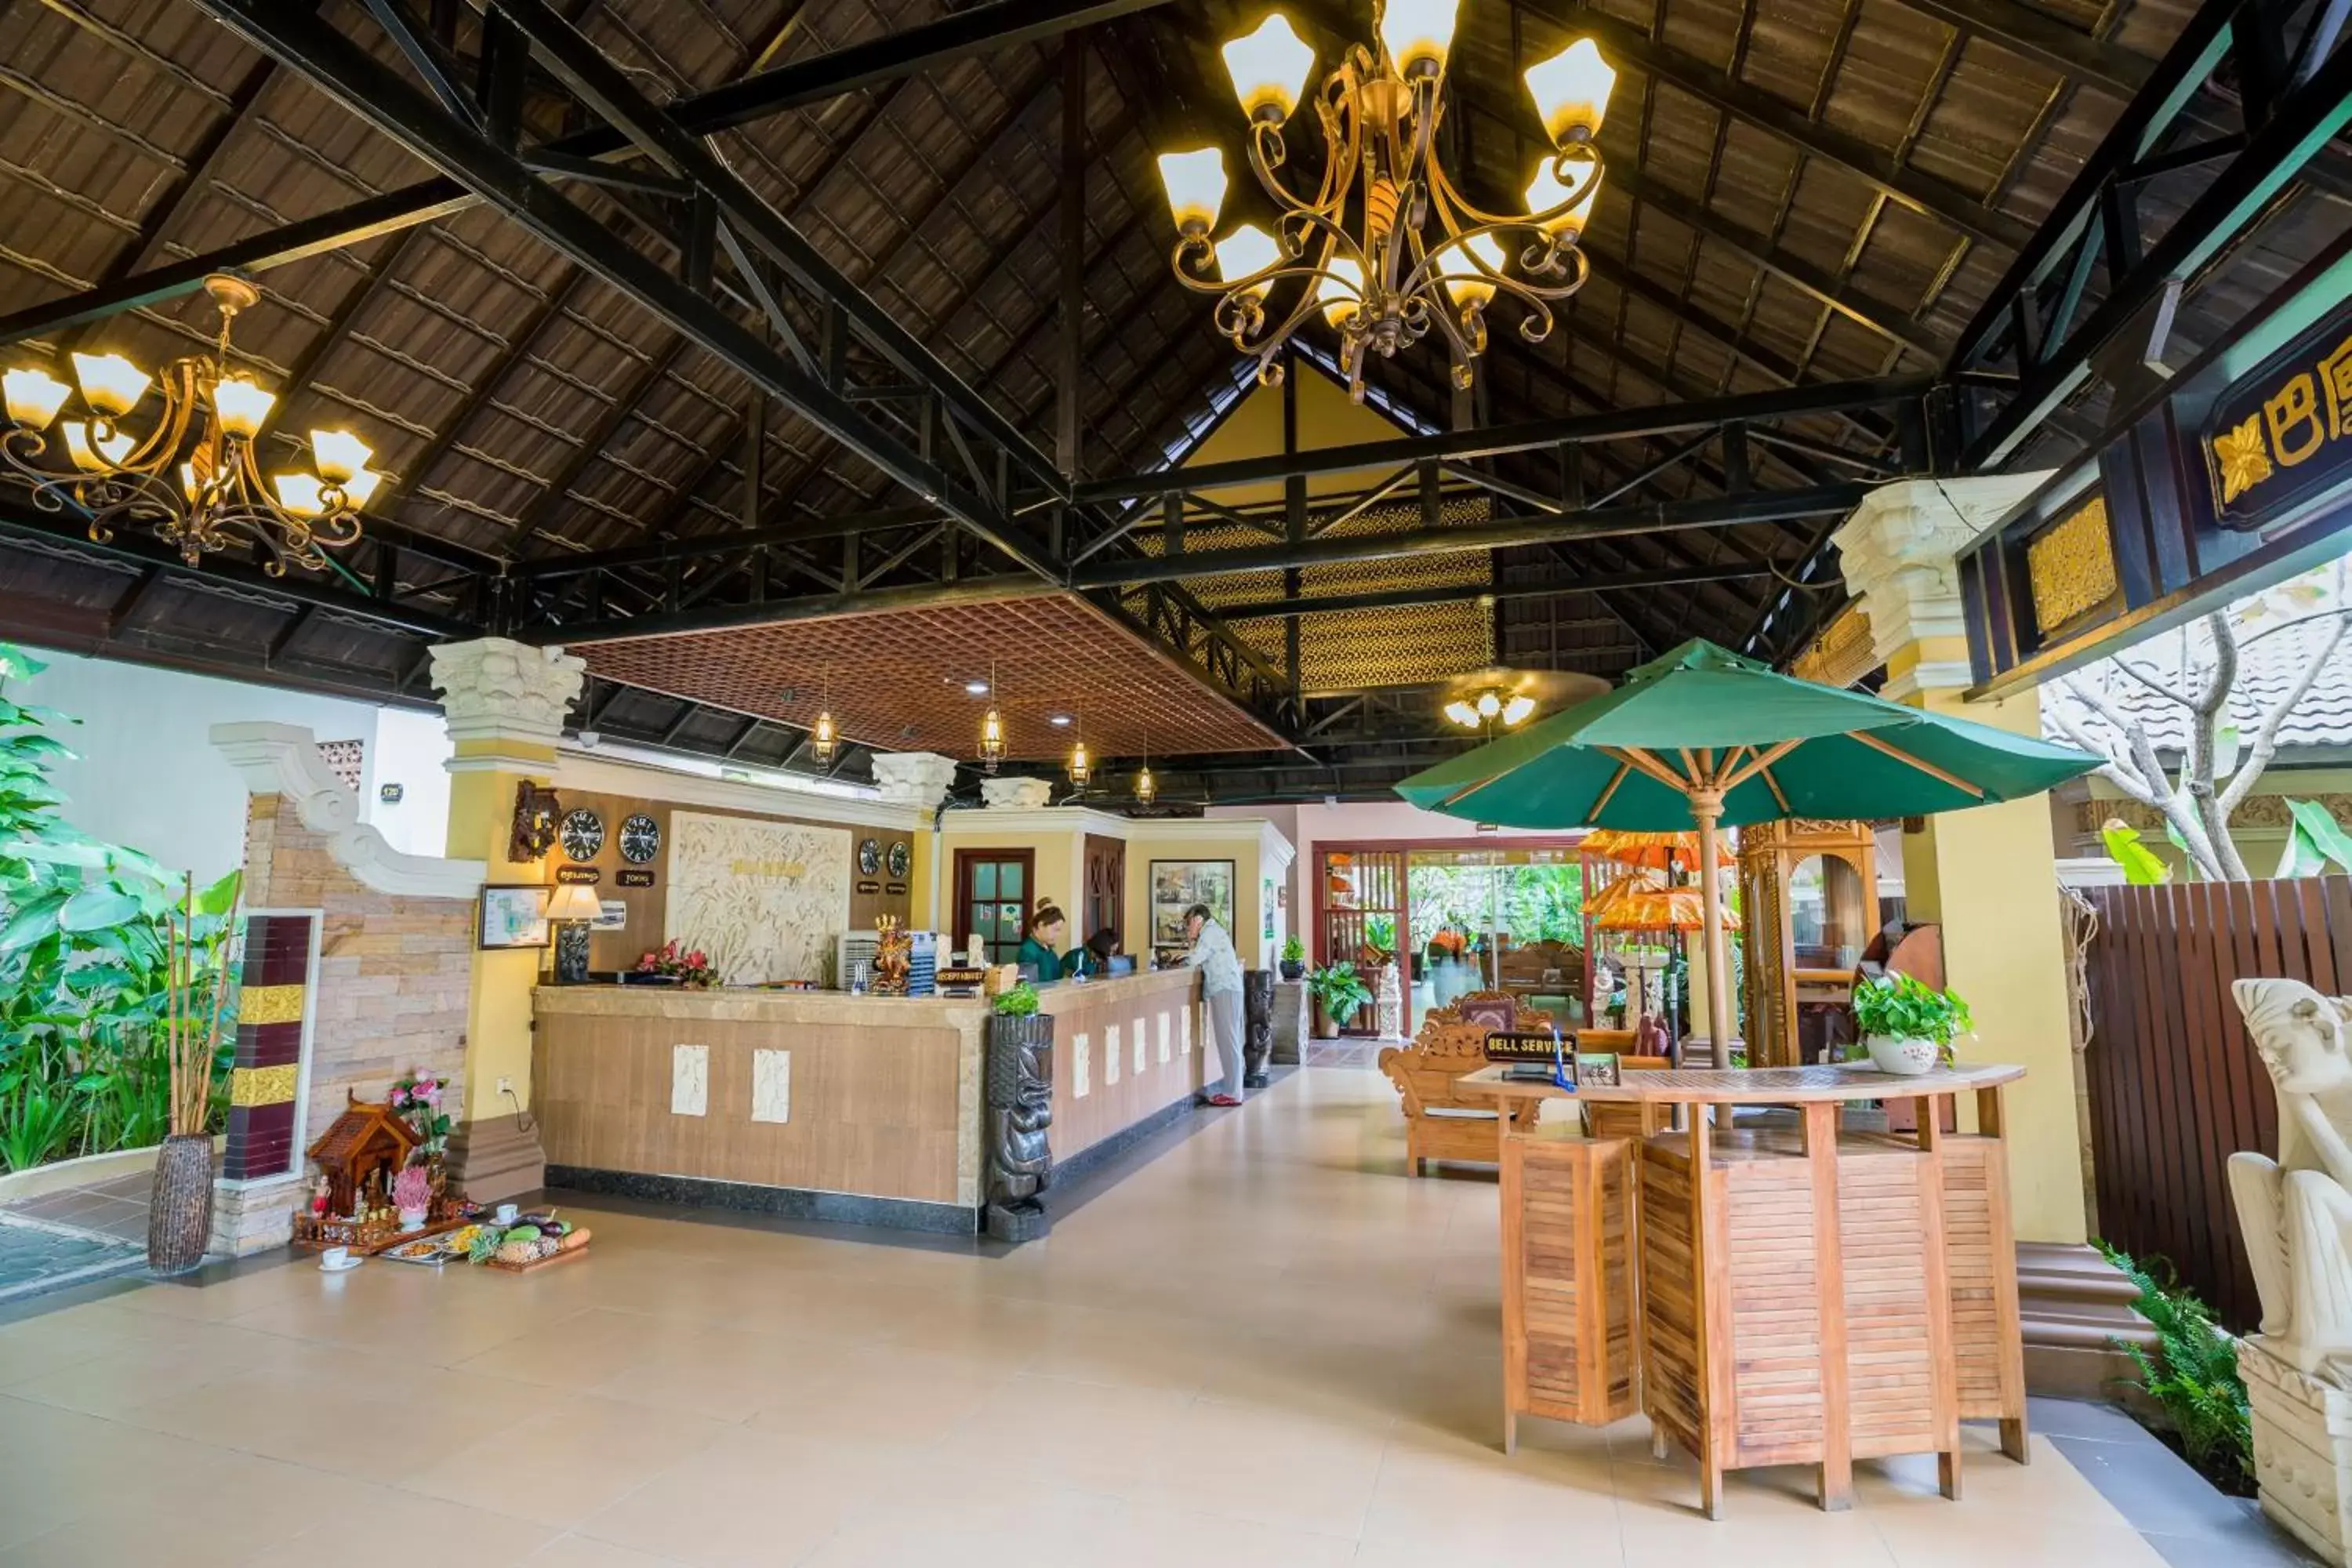 Lobby or reception in Bali Hotel